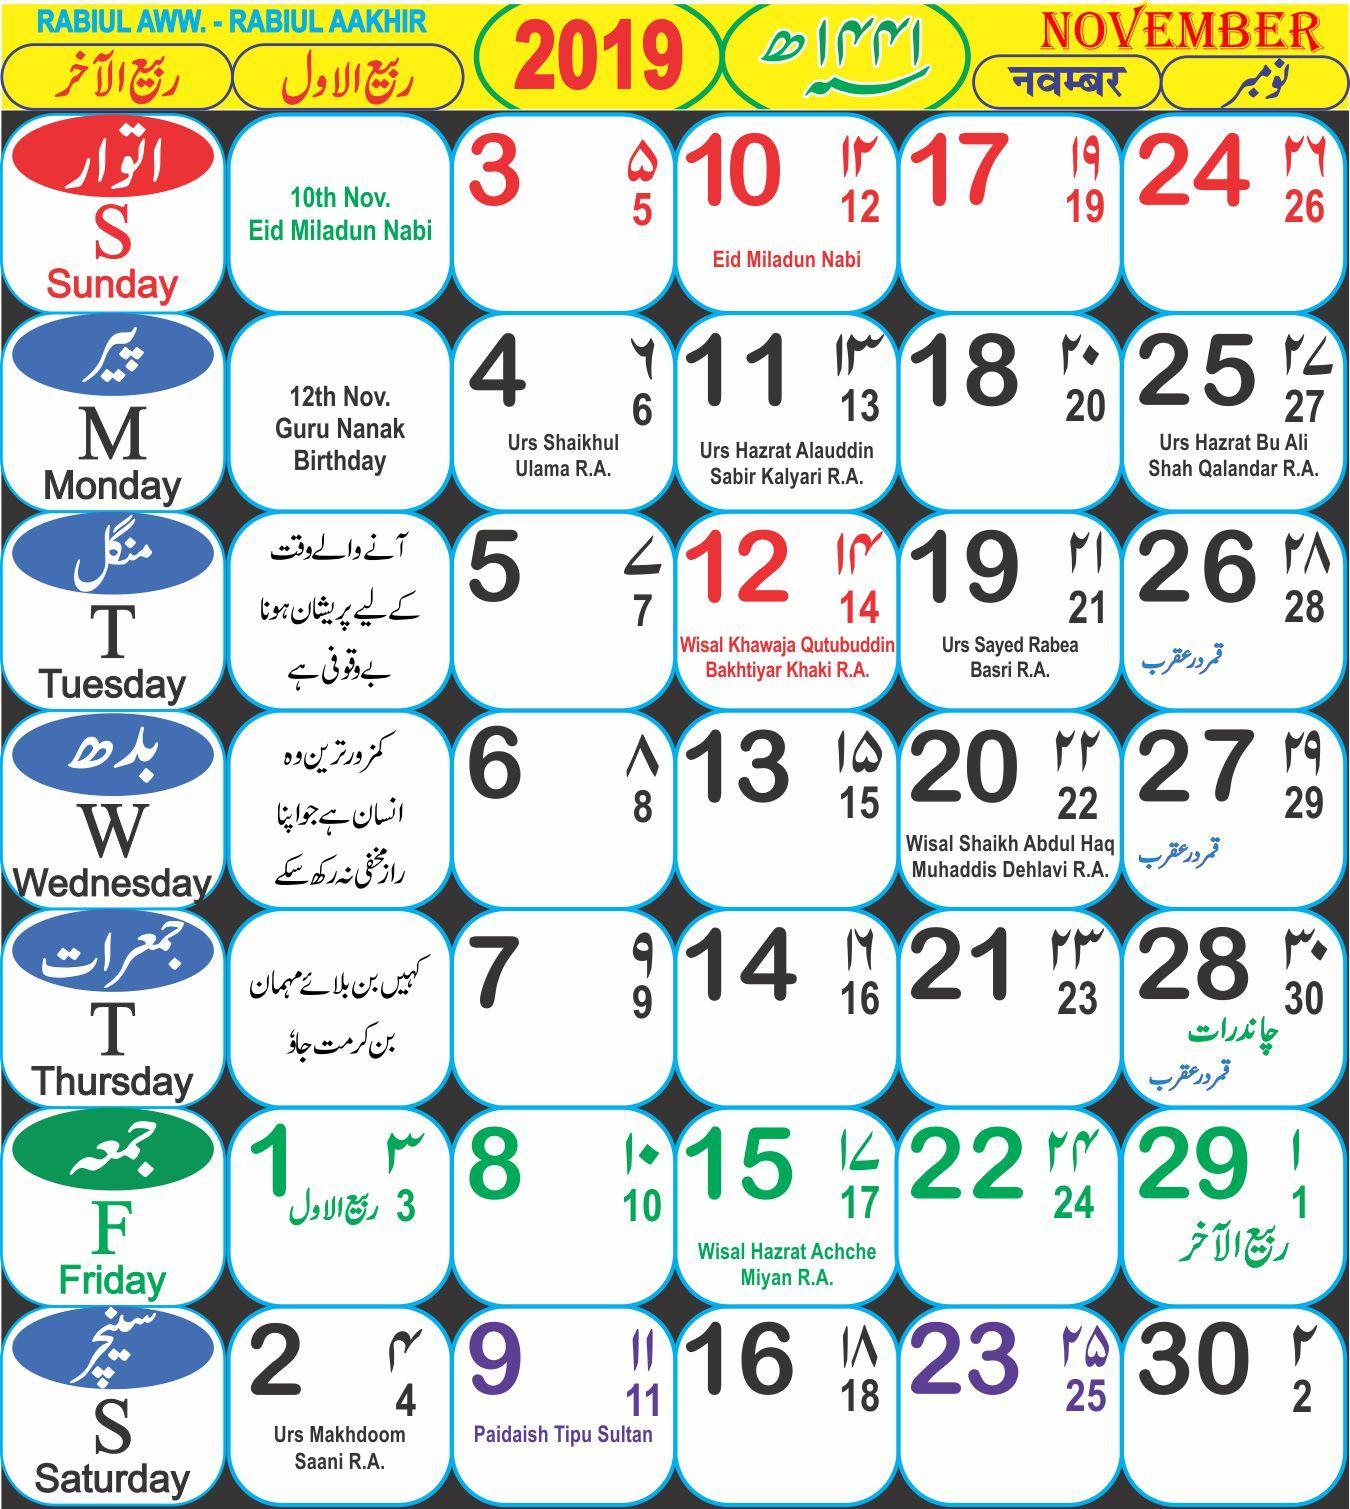 Сколько дней в мусульманском календаре. Исламский календарь. Месяцы по мусульманскому календарю. Календарь Ислама. Название месяцев по мусульманскому календарю.